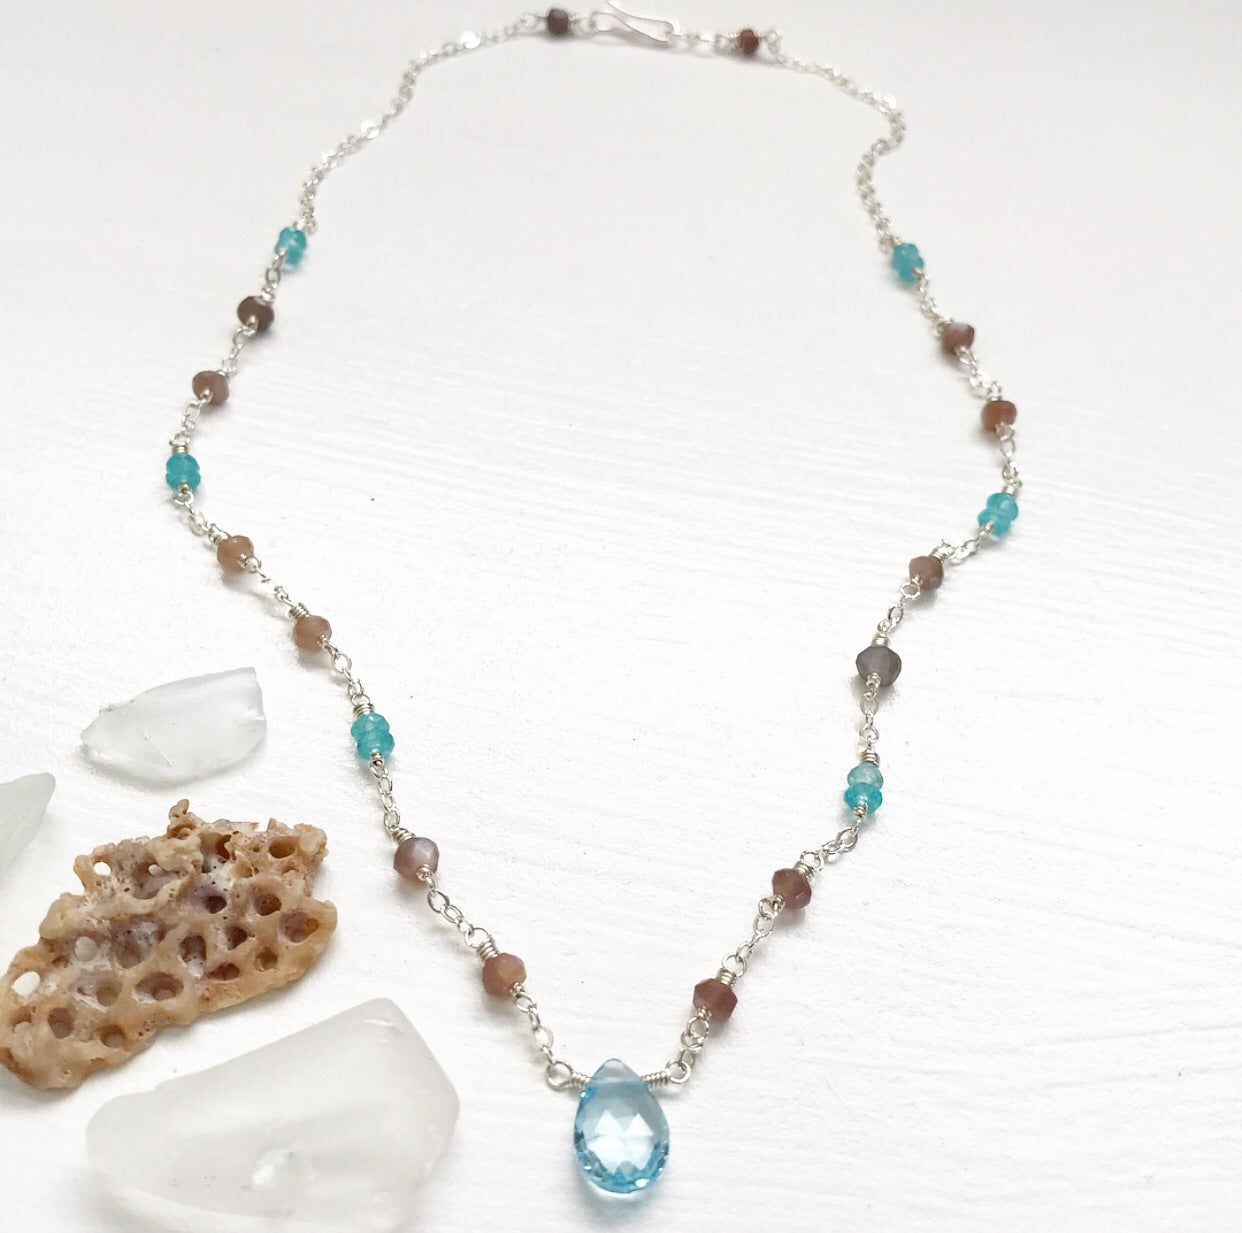 650-Gemstone Layering Necklace